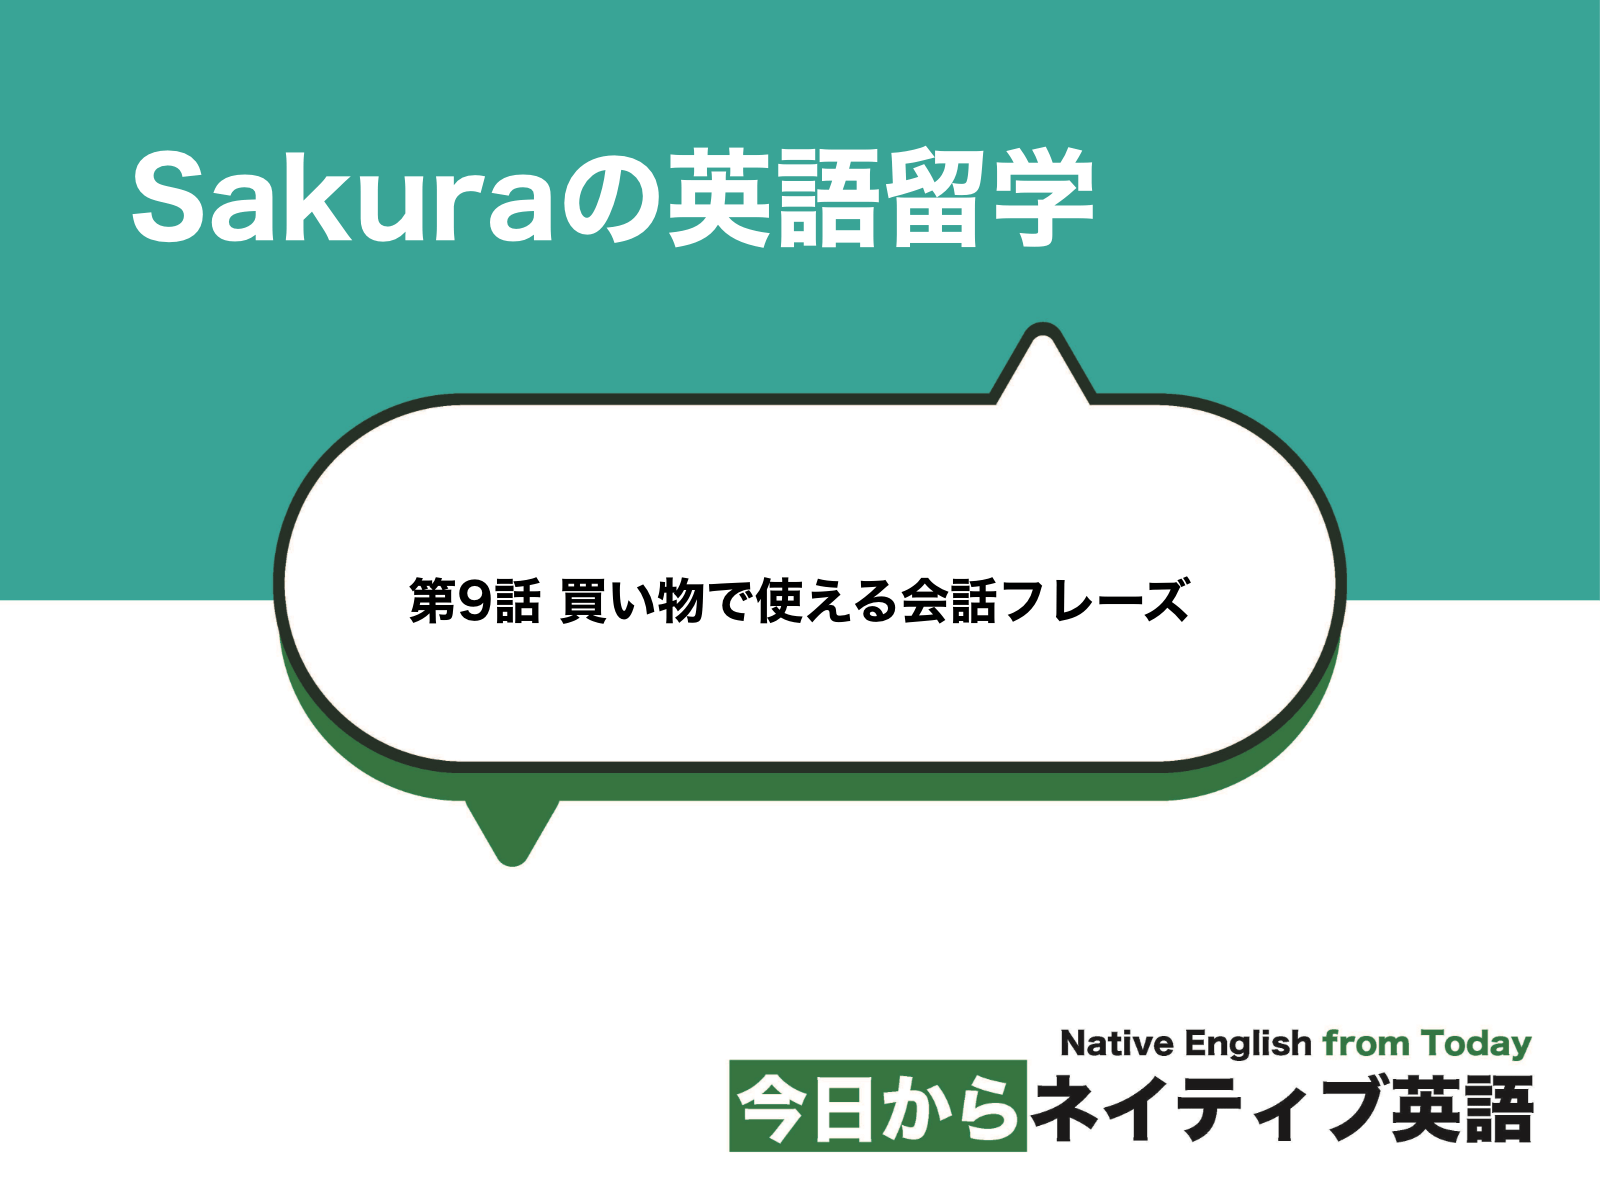 買い物 ショッピングで使える会話フレーズ Sakuraの英語留学 新しい時代の留学